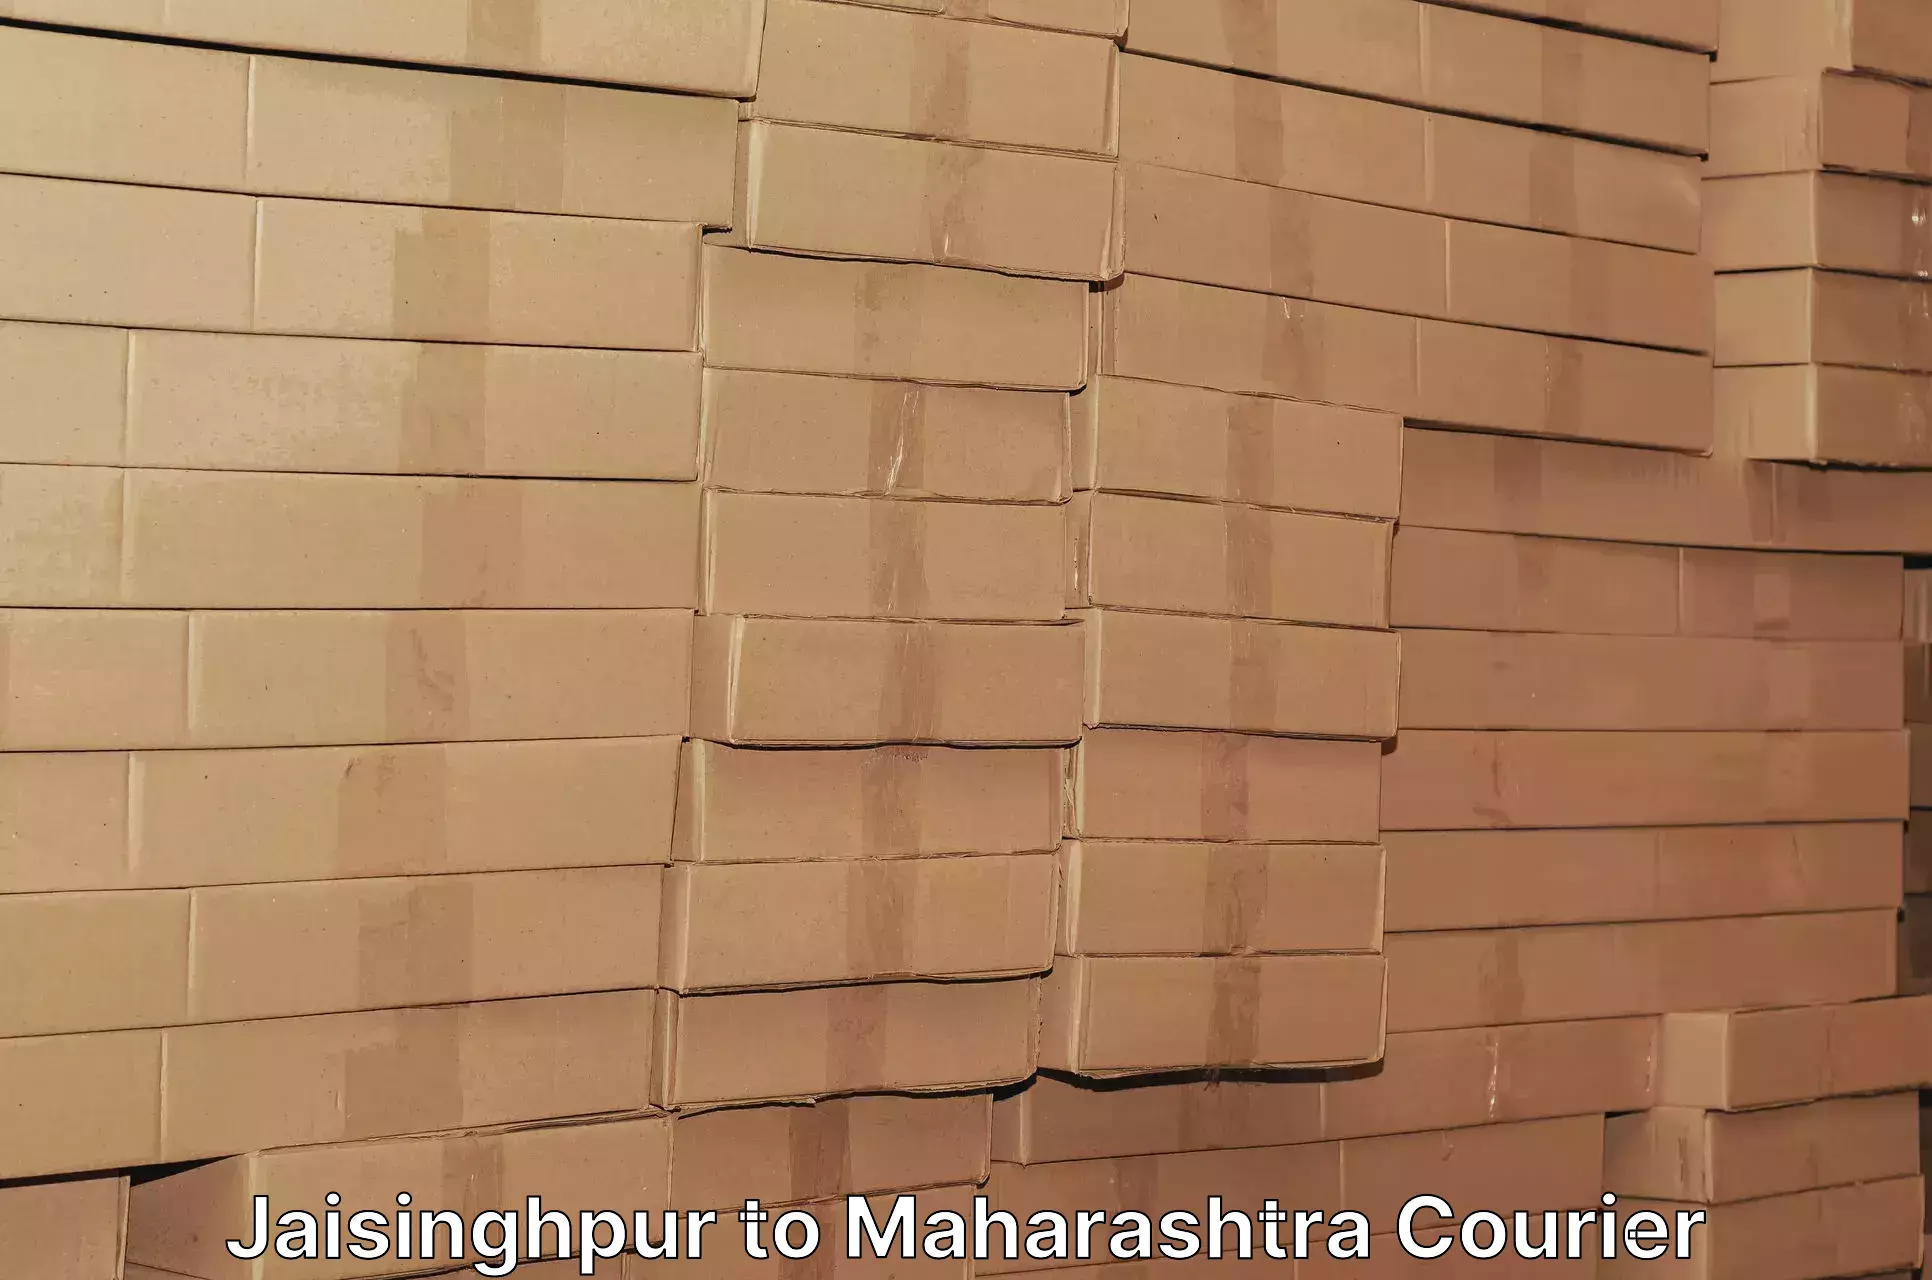 Cash on delivery service Jaisinghpur to IIT Mumbai